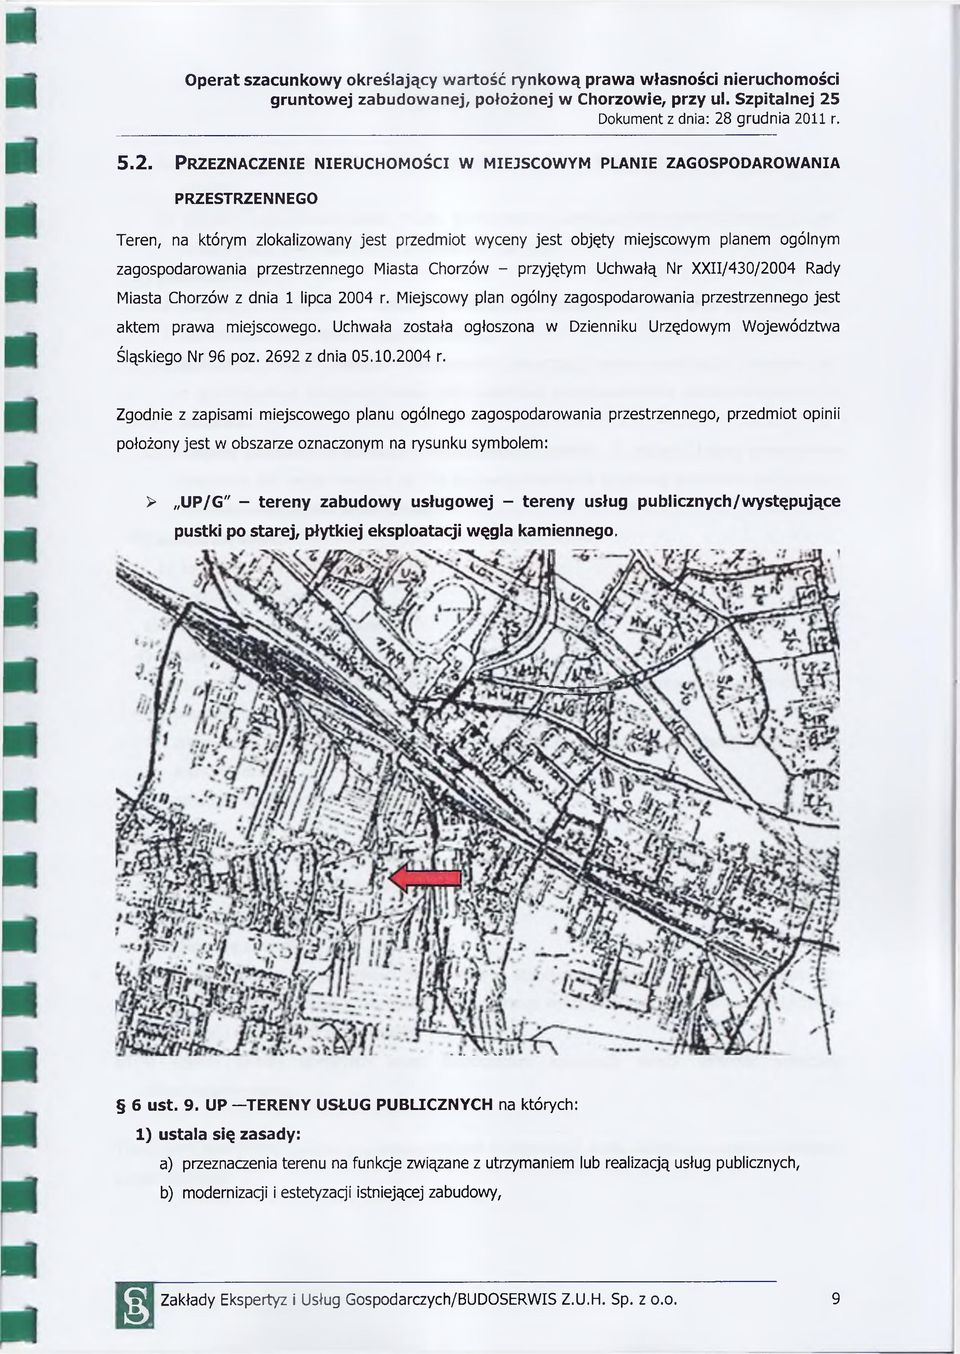 Miejscowy plan ogólny zagospodarowania przestrzennego jest aktem prawa miejscowego. Uchwała została ogłoszona w Dzienniku Urzędowym Województwa Śląskiego Nr 96 poz. 2692 z dnia 05.10.2004 r.